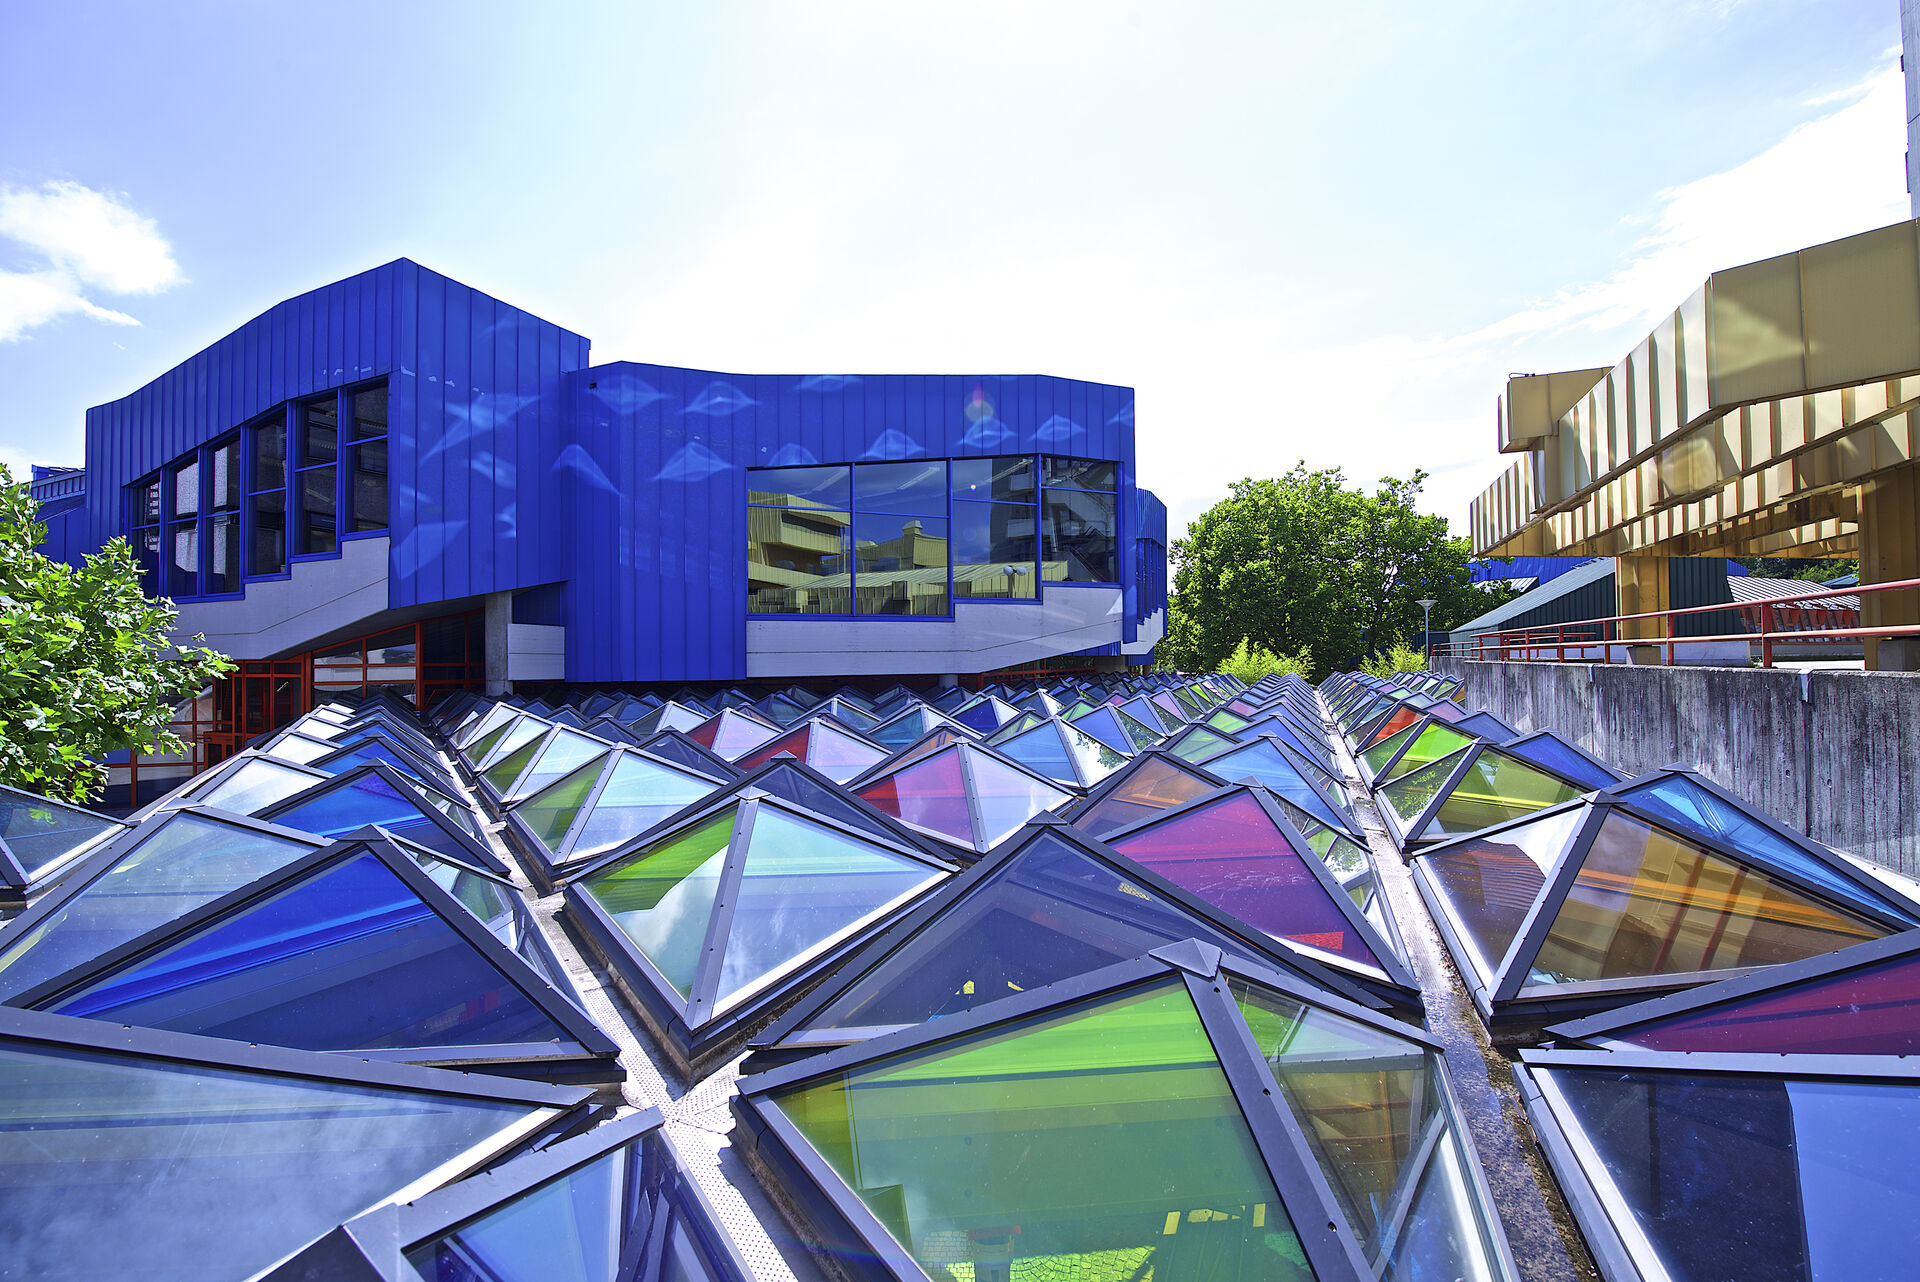 Utsiden av et av bygningene på campus der taket er laget av diverse trekanter av farget glass i forskjellige farger.